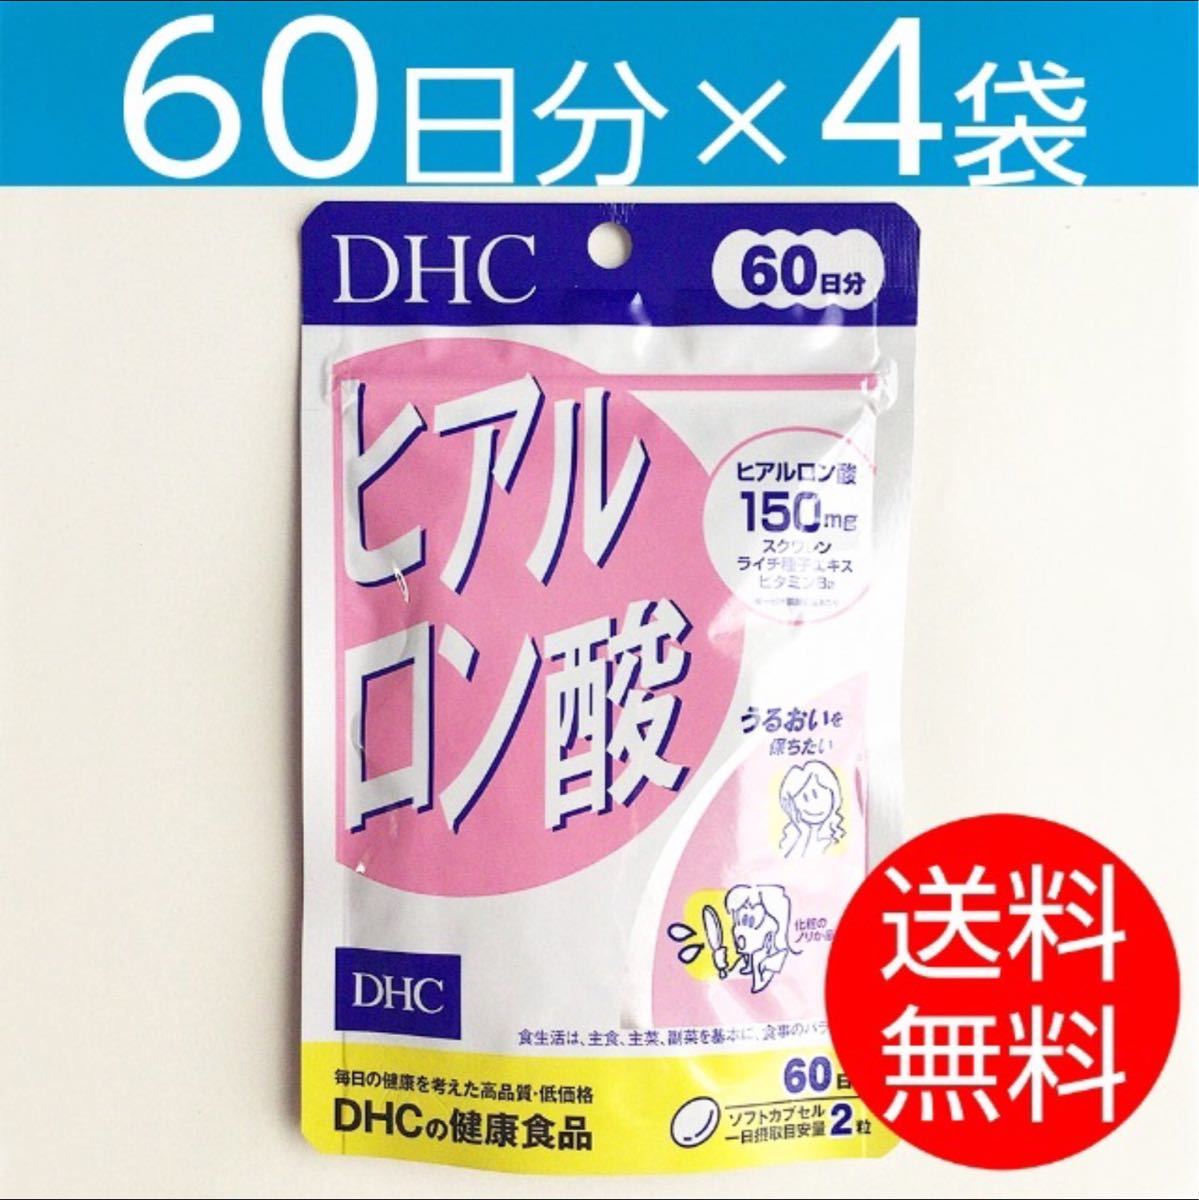 DHC ヒアルロン酸 60日分 120粒入